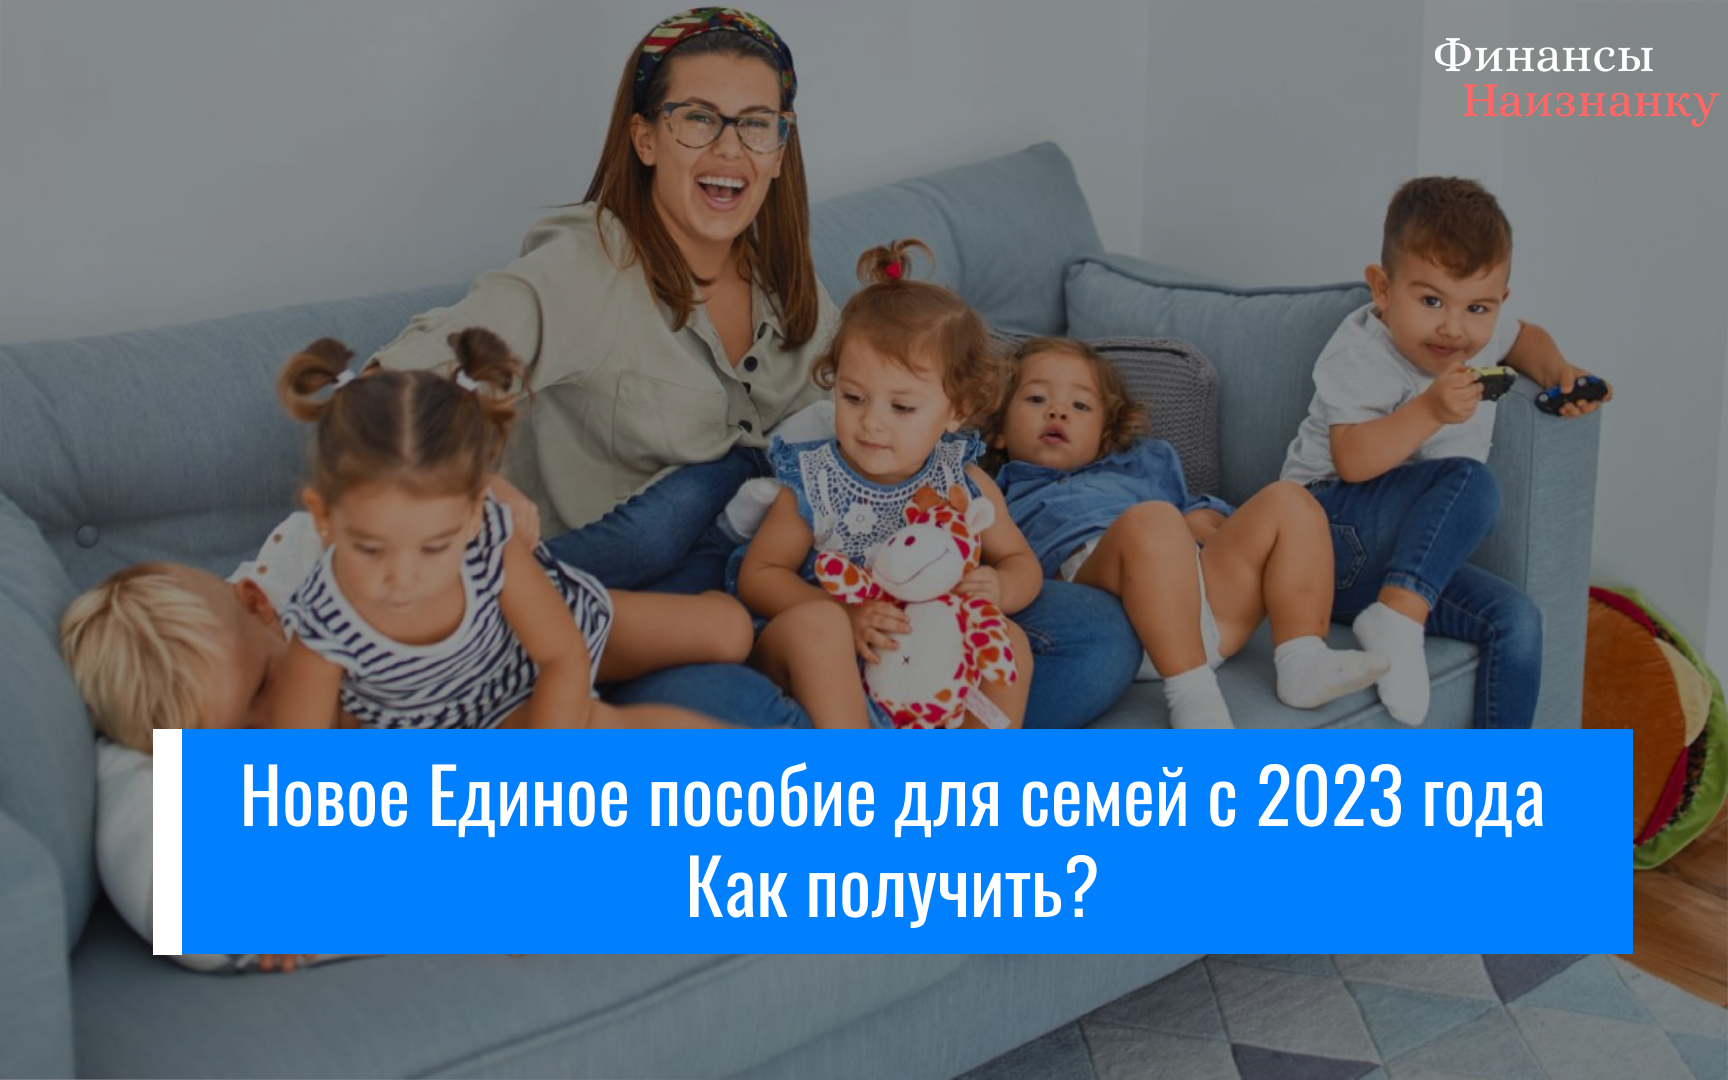 Новое Единое пособие для семей с детьми -Как получить с 2023 года?